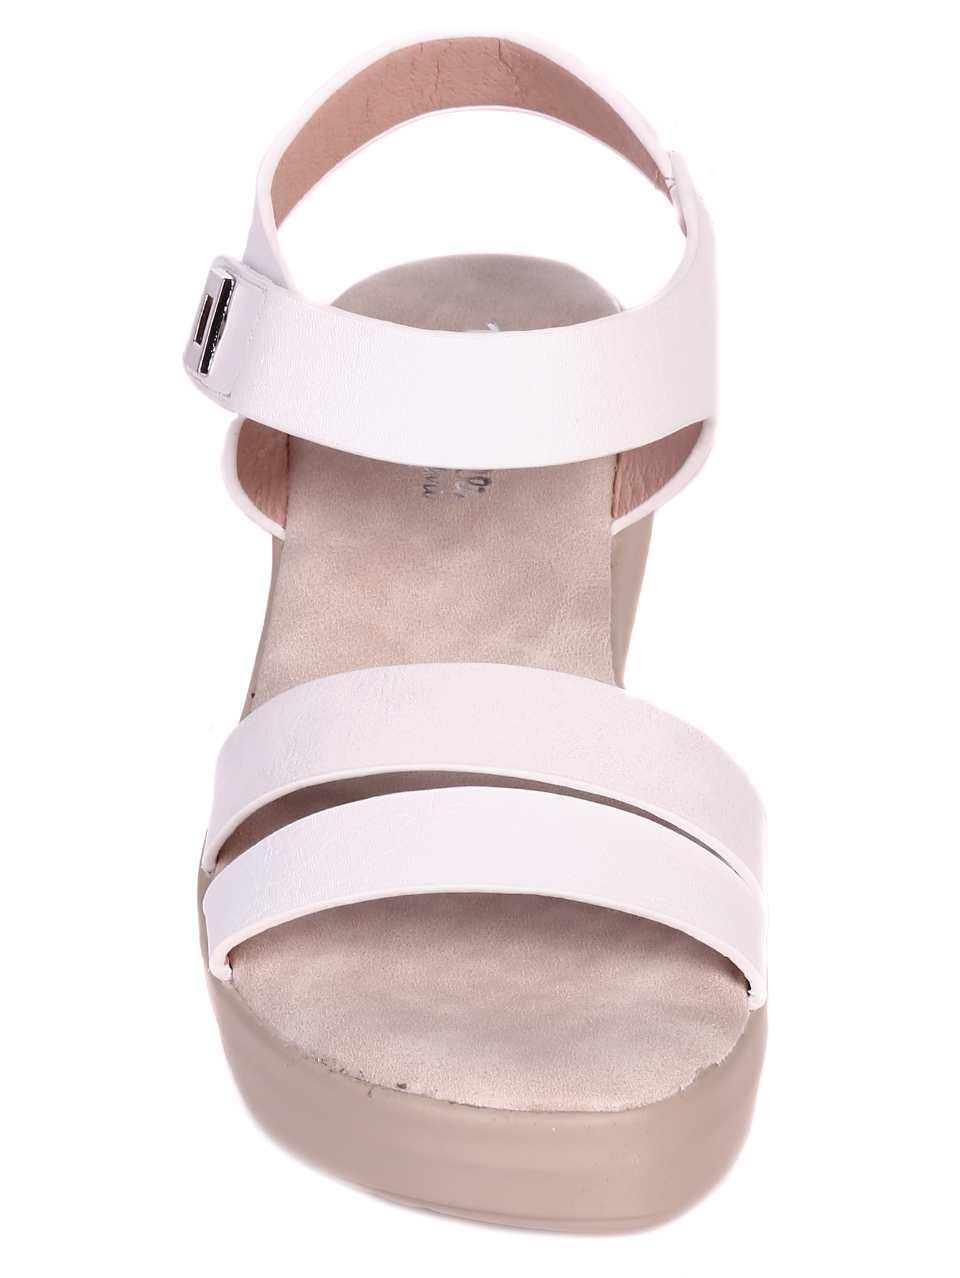 Ежедневни дамски комфортни сандали на платформа 4C-21129 white